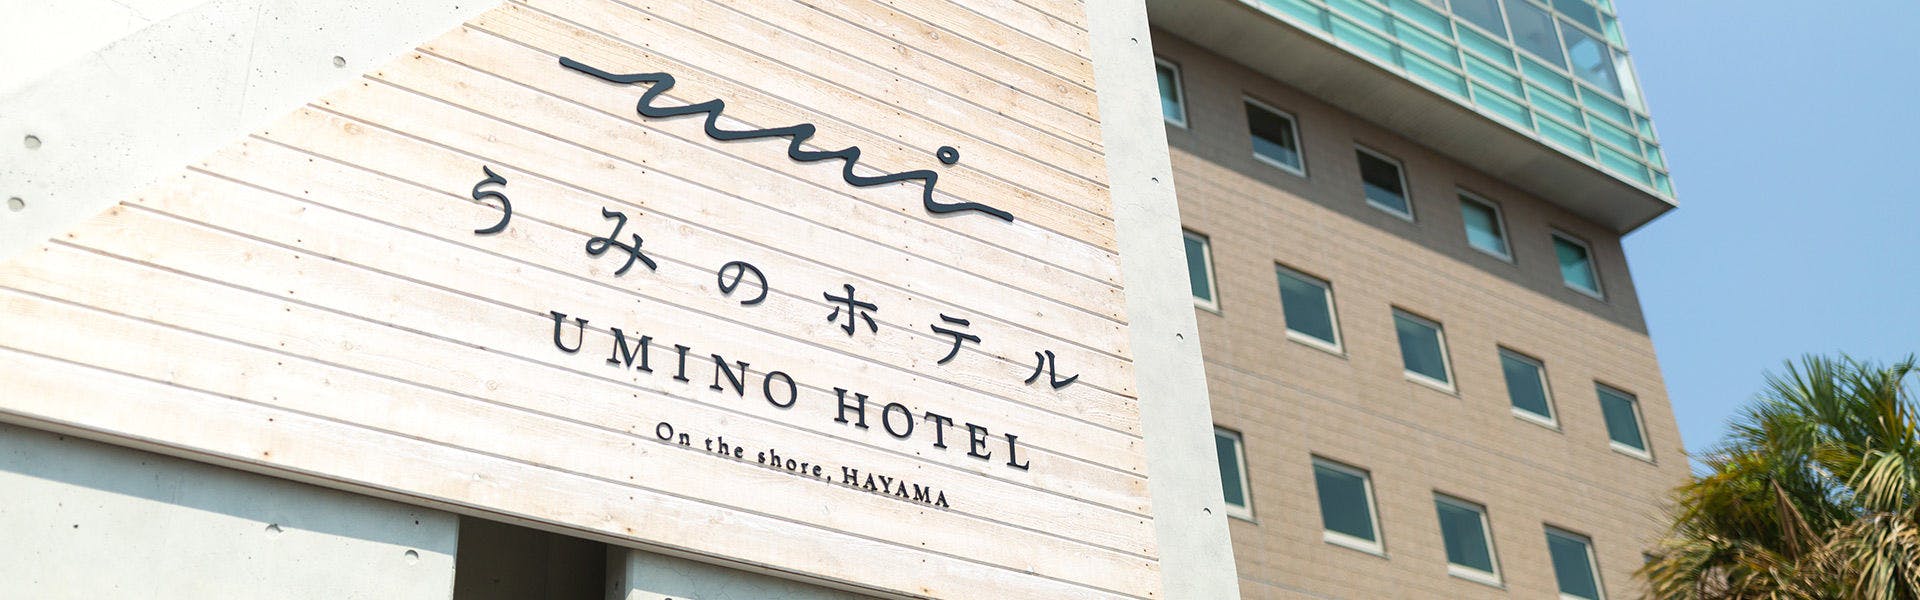 葉山の一人旅におすすめのホテル 旅館 15選 宿泊予約は 一休 Com